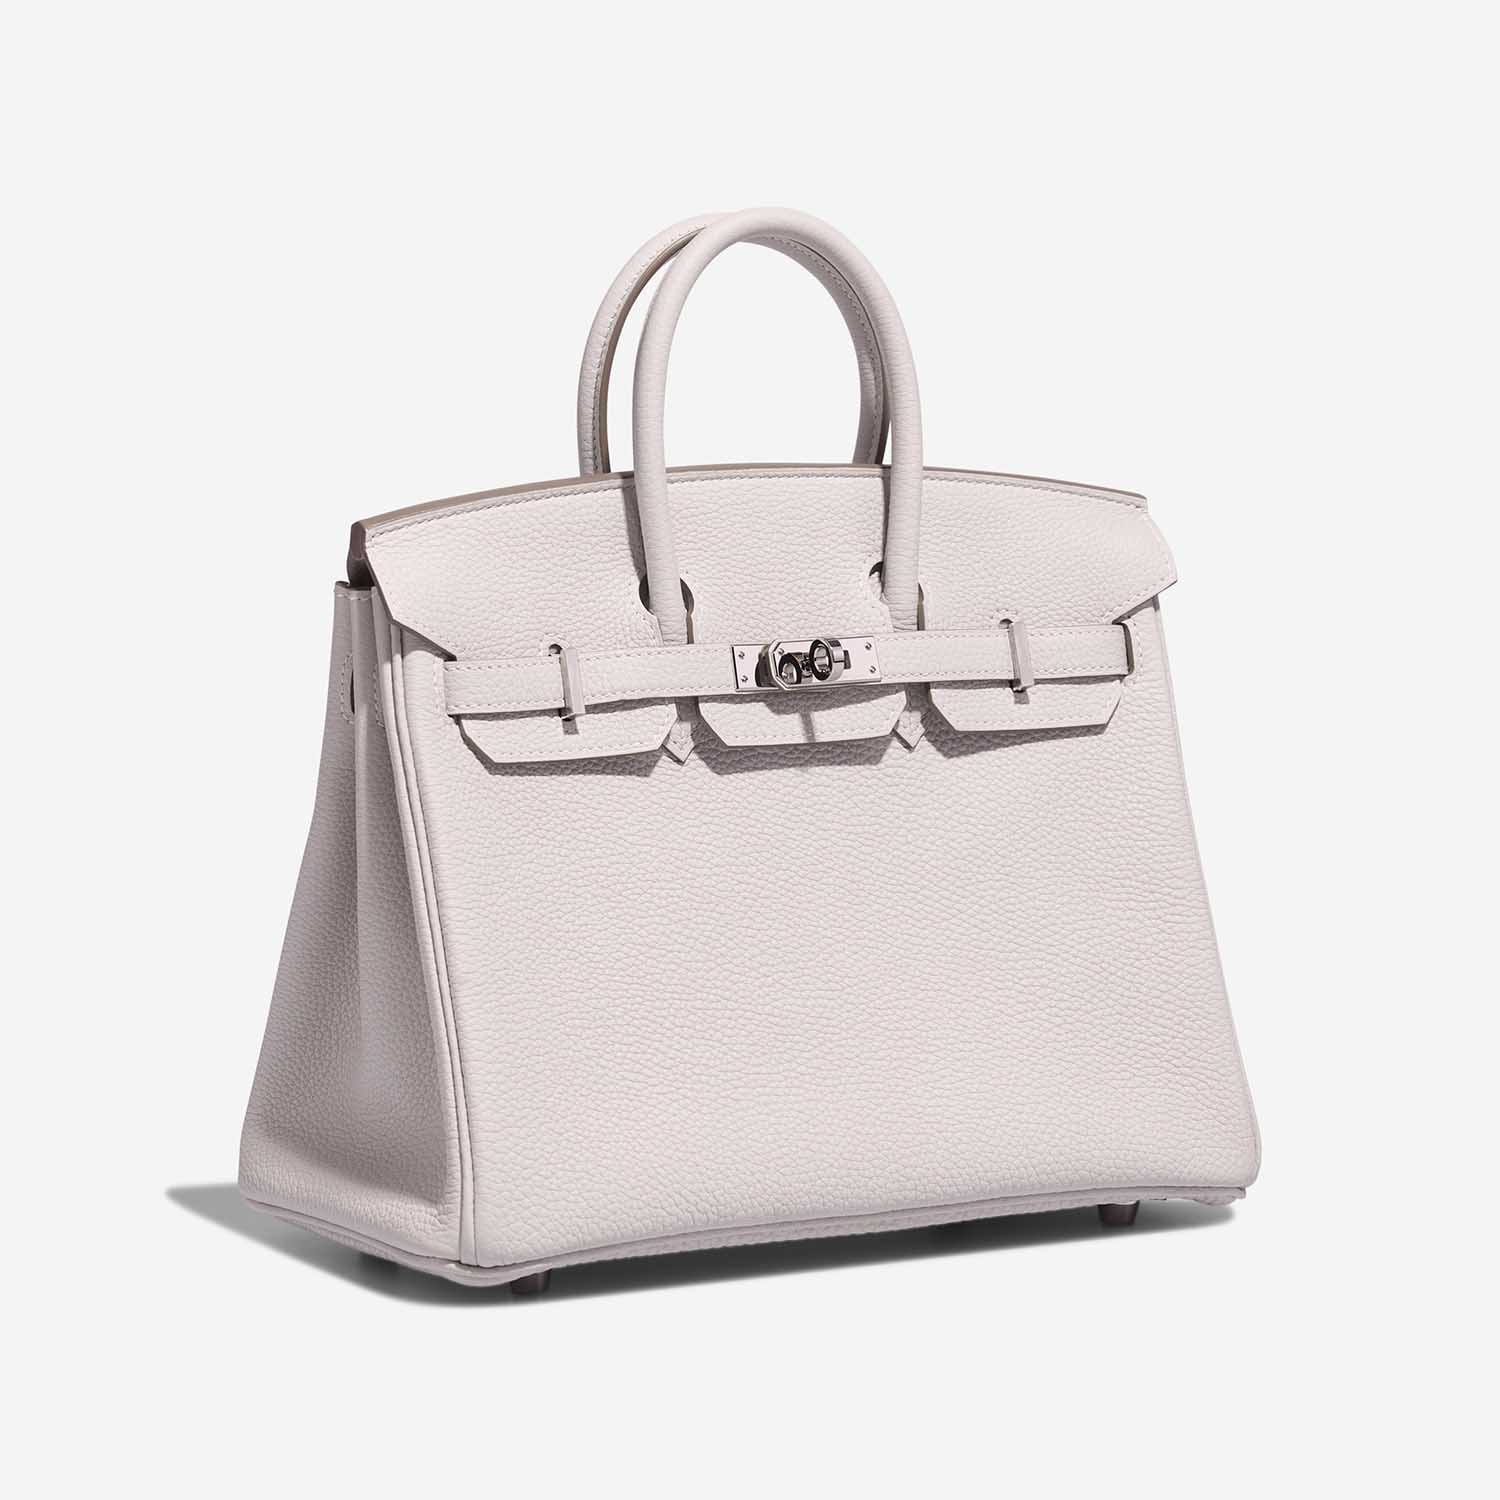 Hermès Birkin 25 GrisPale Side Front | Verkaufen Sie Ihre Designer-Tasche auf Saclab.com